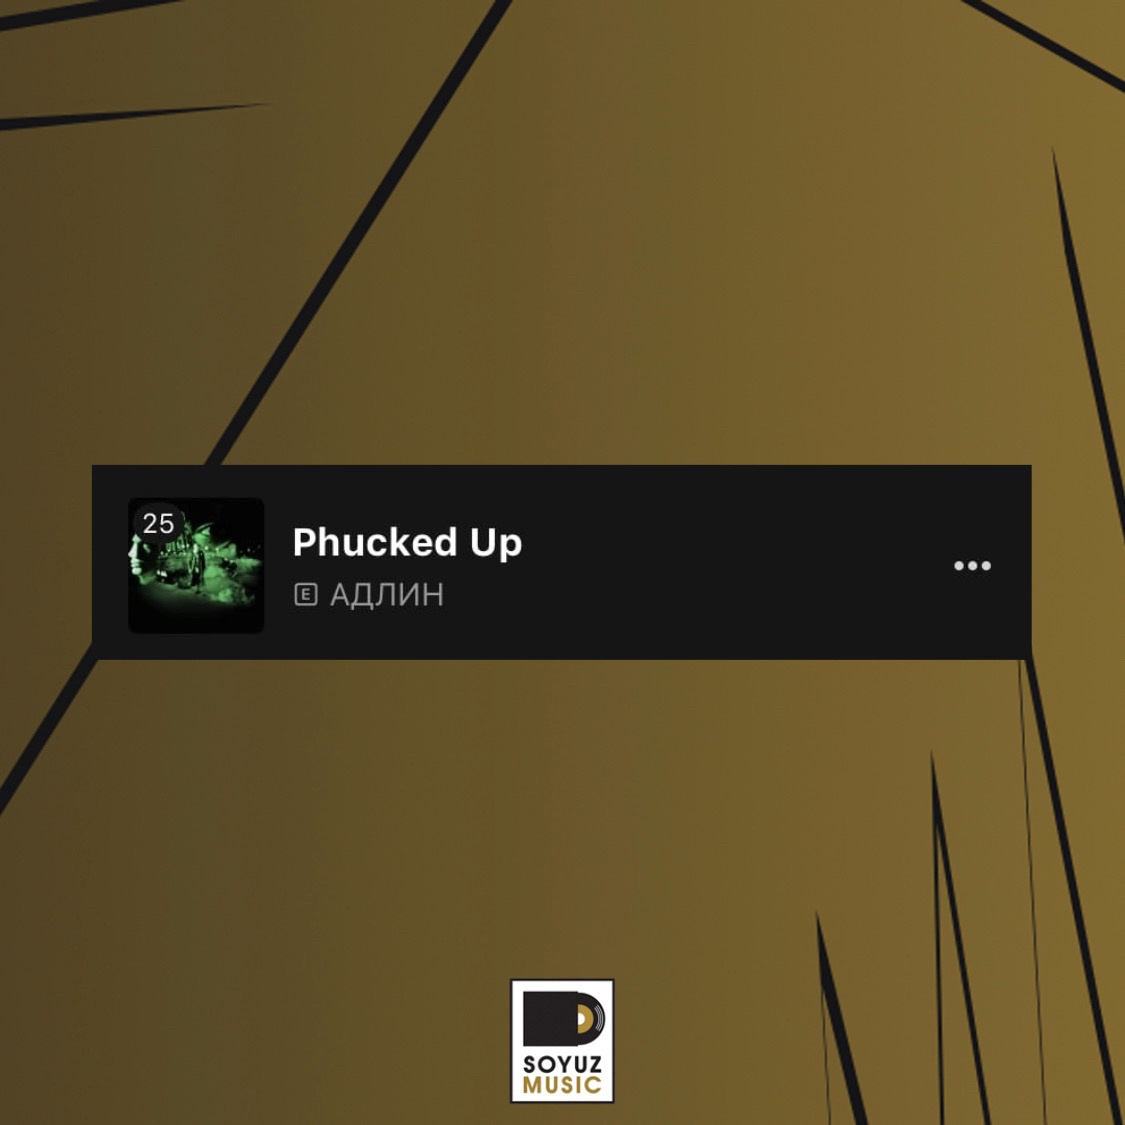 АДЛИН стартует в топ-30 в чарта альбомов VK Музыки с новым лонгплеем «Phucked Up»!